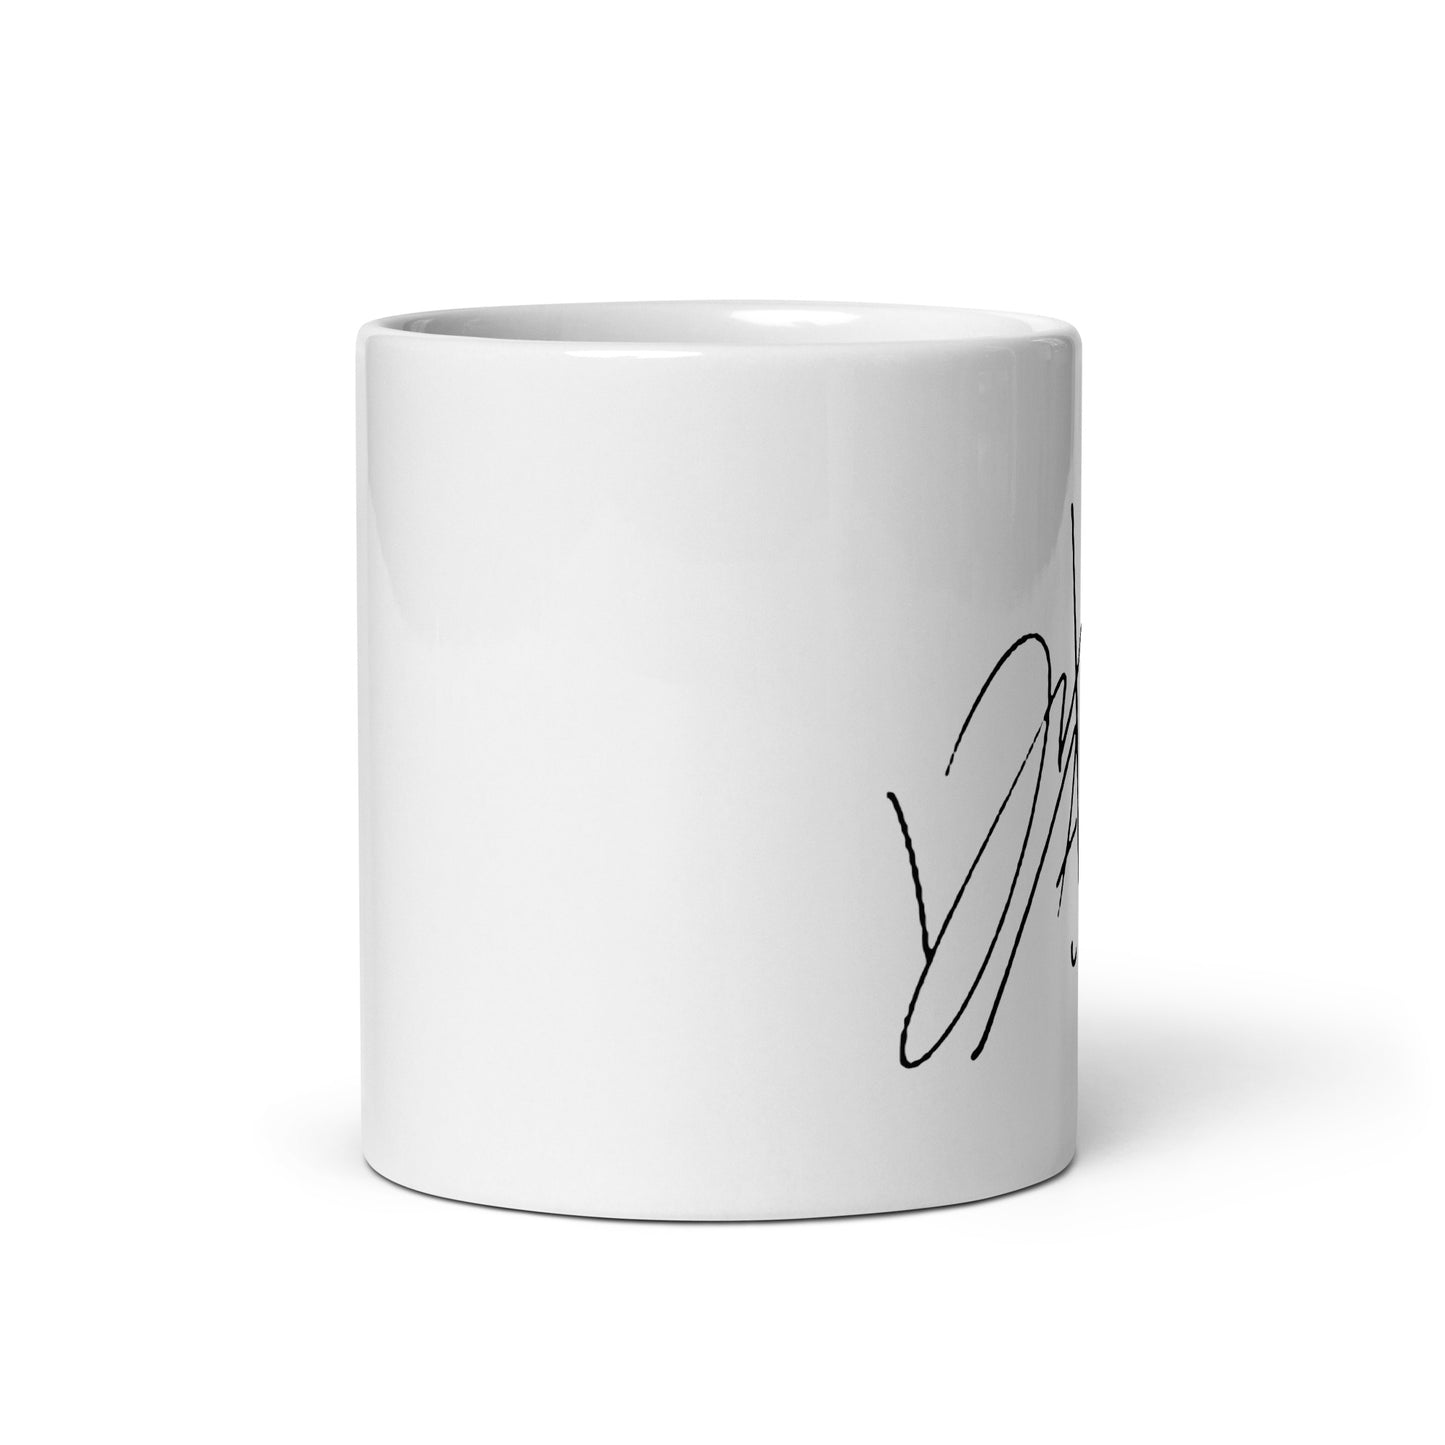 GOT7 Jinyoung, Park Jin-young Signature Ceramic Mug